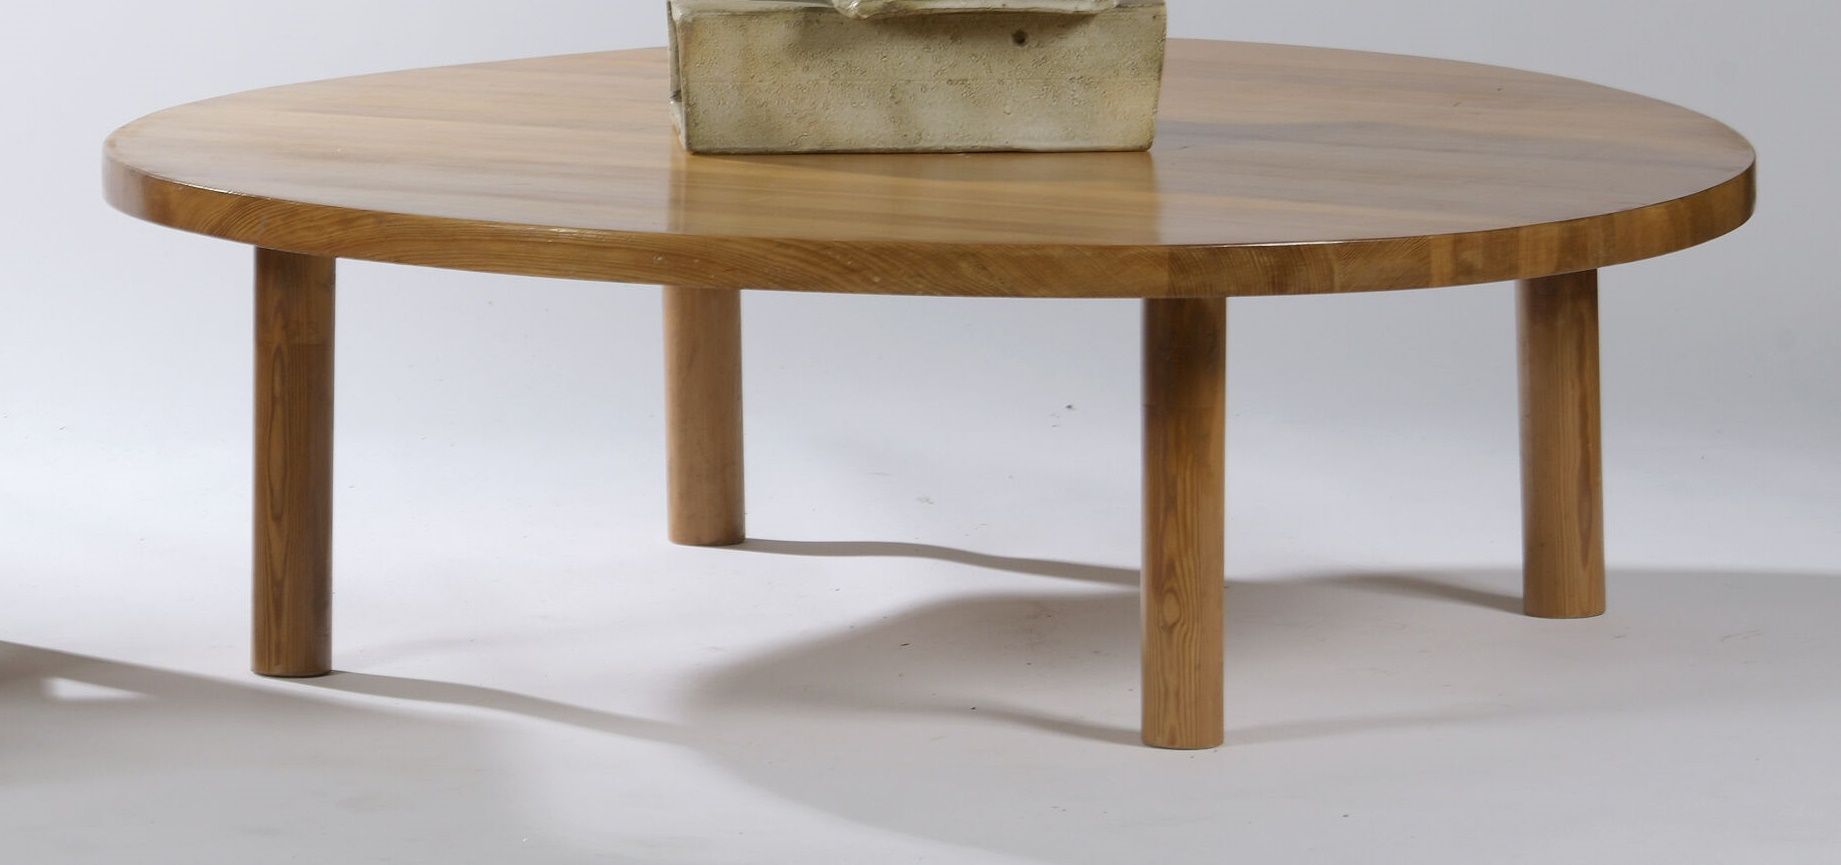 Null 1960年代的法国作品。

优雅的大型咖啡桌。该结构有四个圆腿，支持一个大的圆形实心顶。

松树。

H.34 cm - D. 109 cm。